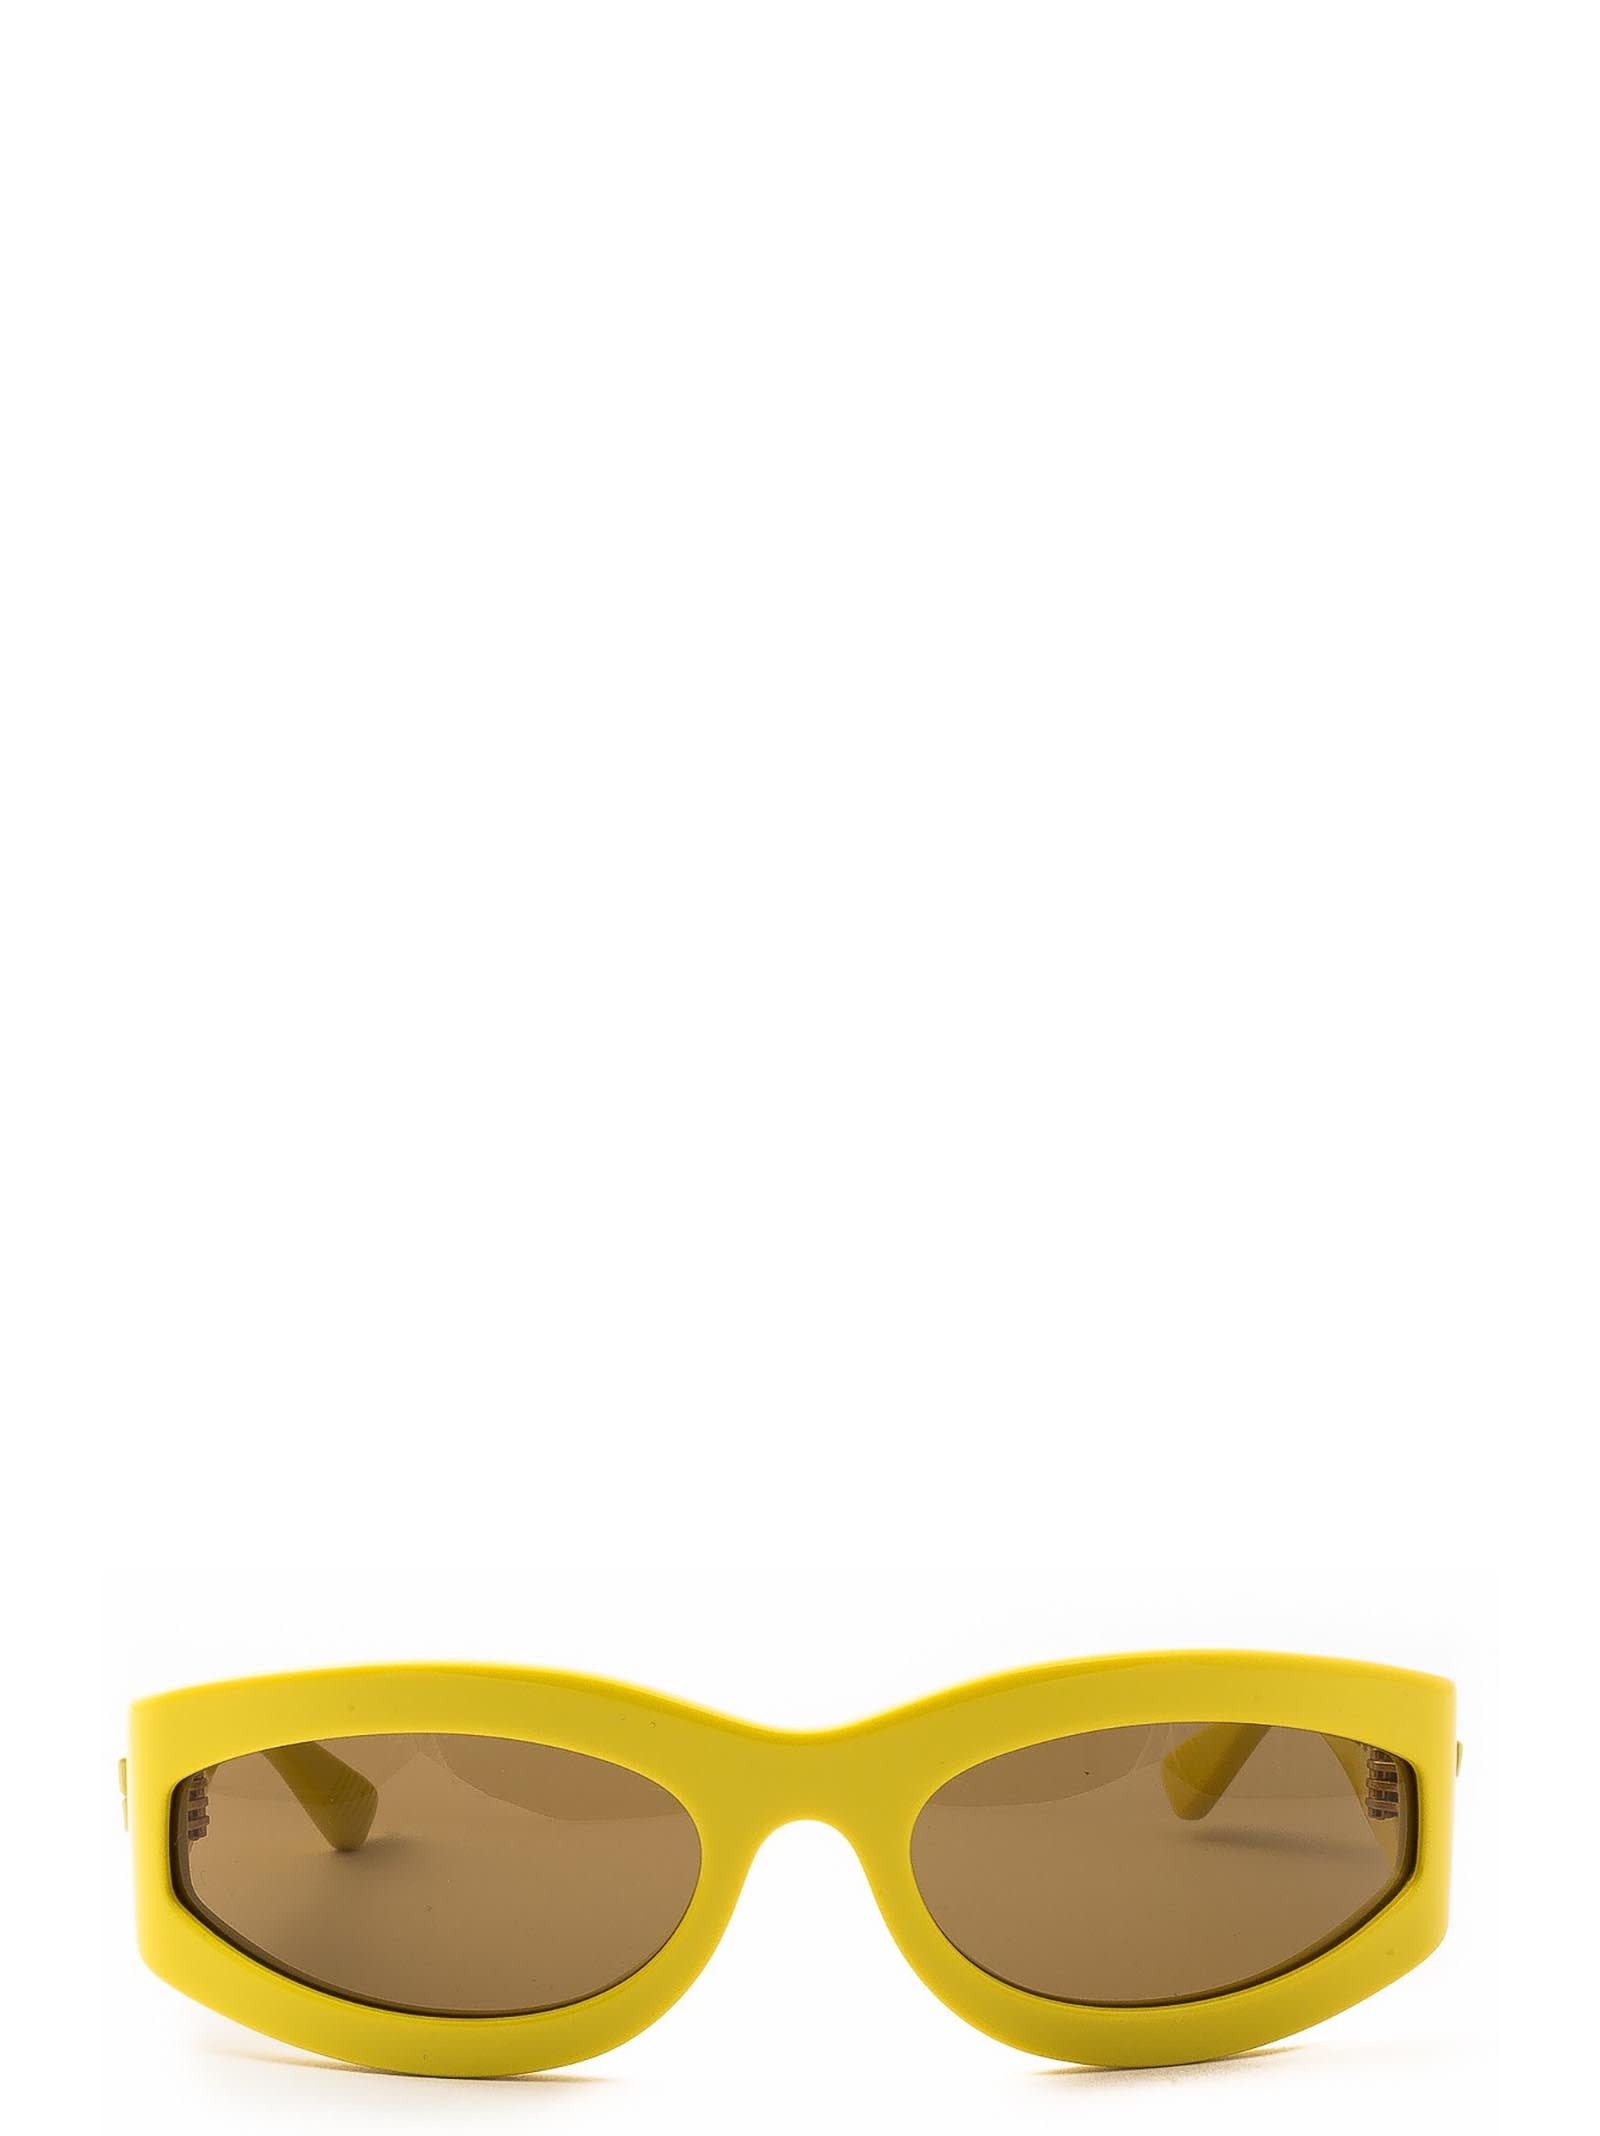 Bottega Veneta Bottega Veneta Bv1089s Yellow Sunglasses